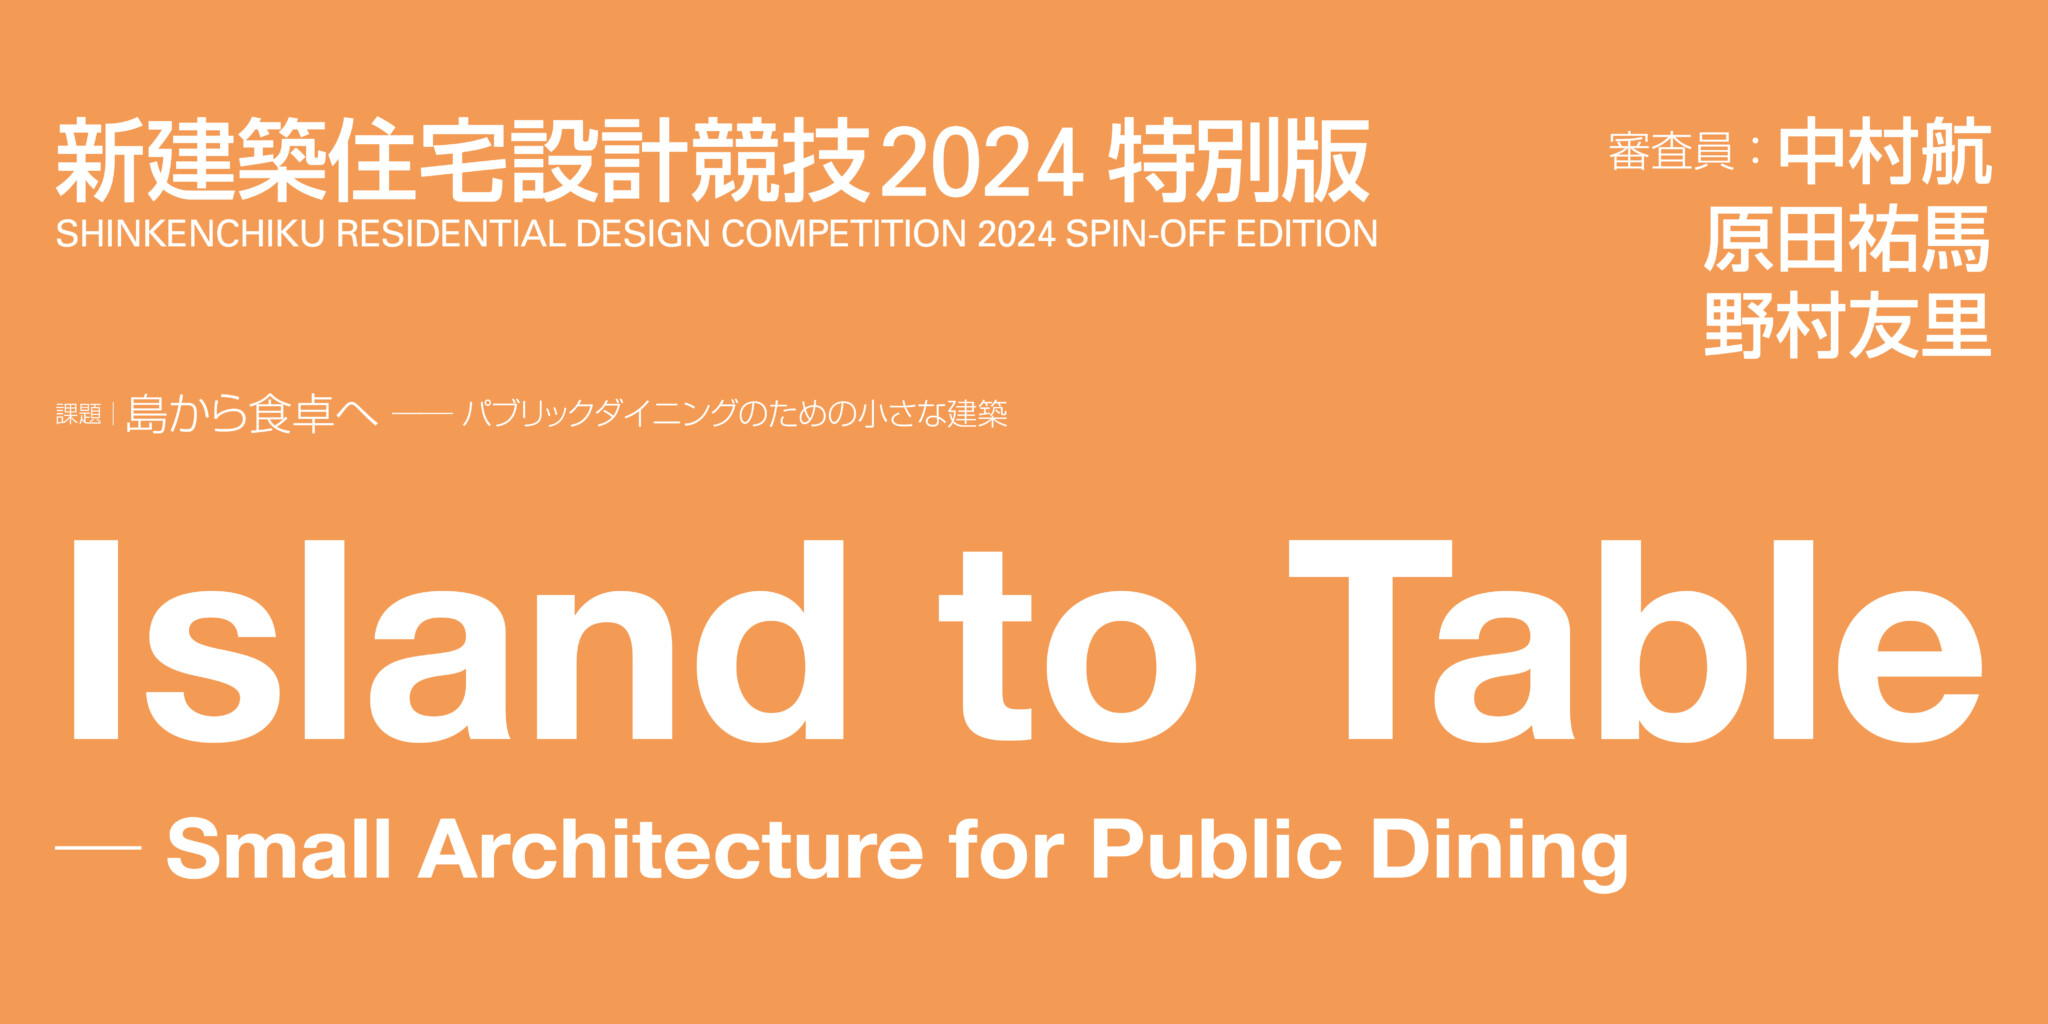 新建筑住宅设计竞赛 2024 特别版：从岛屿到餐桌——适合公共用餐的小型建筑